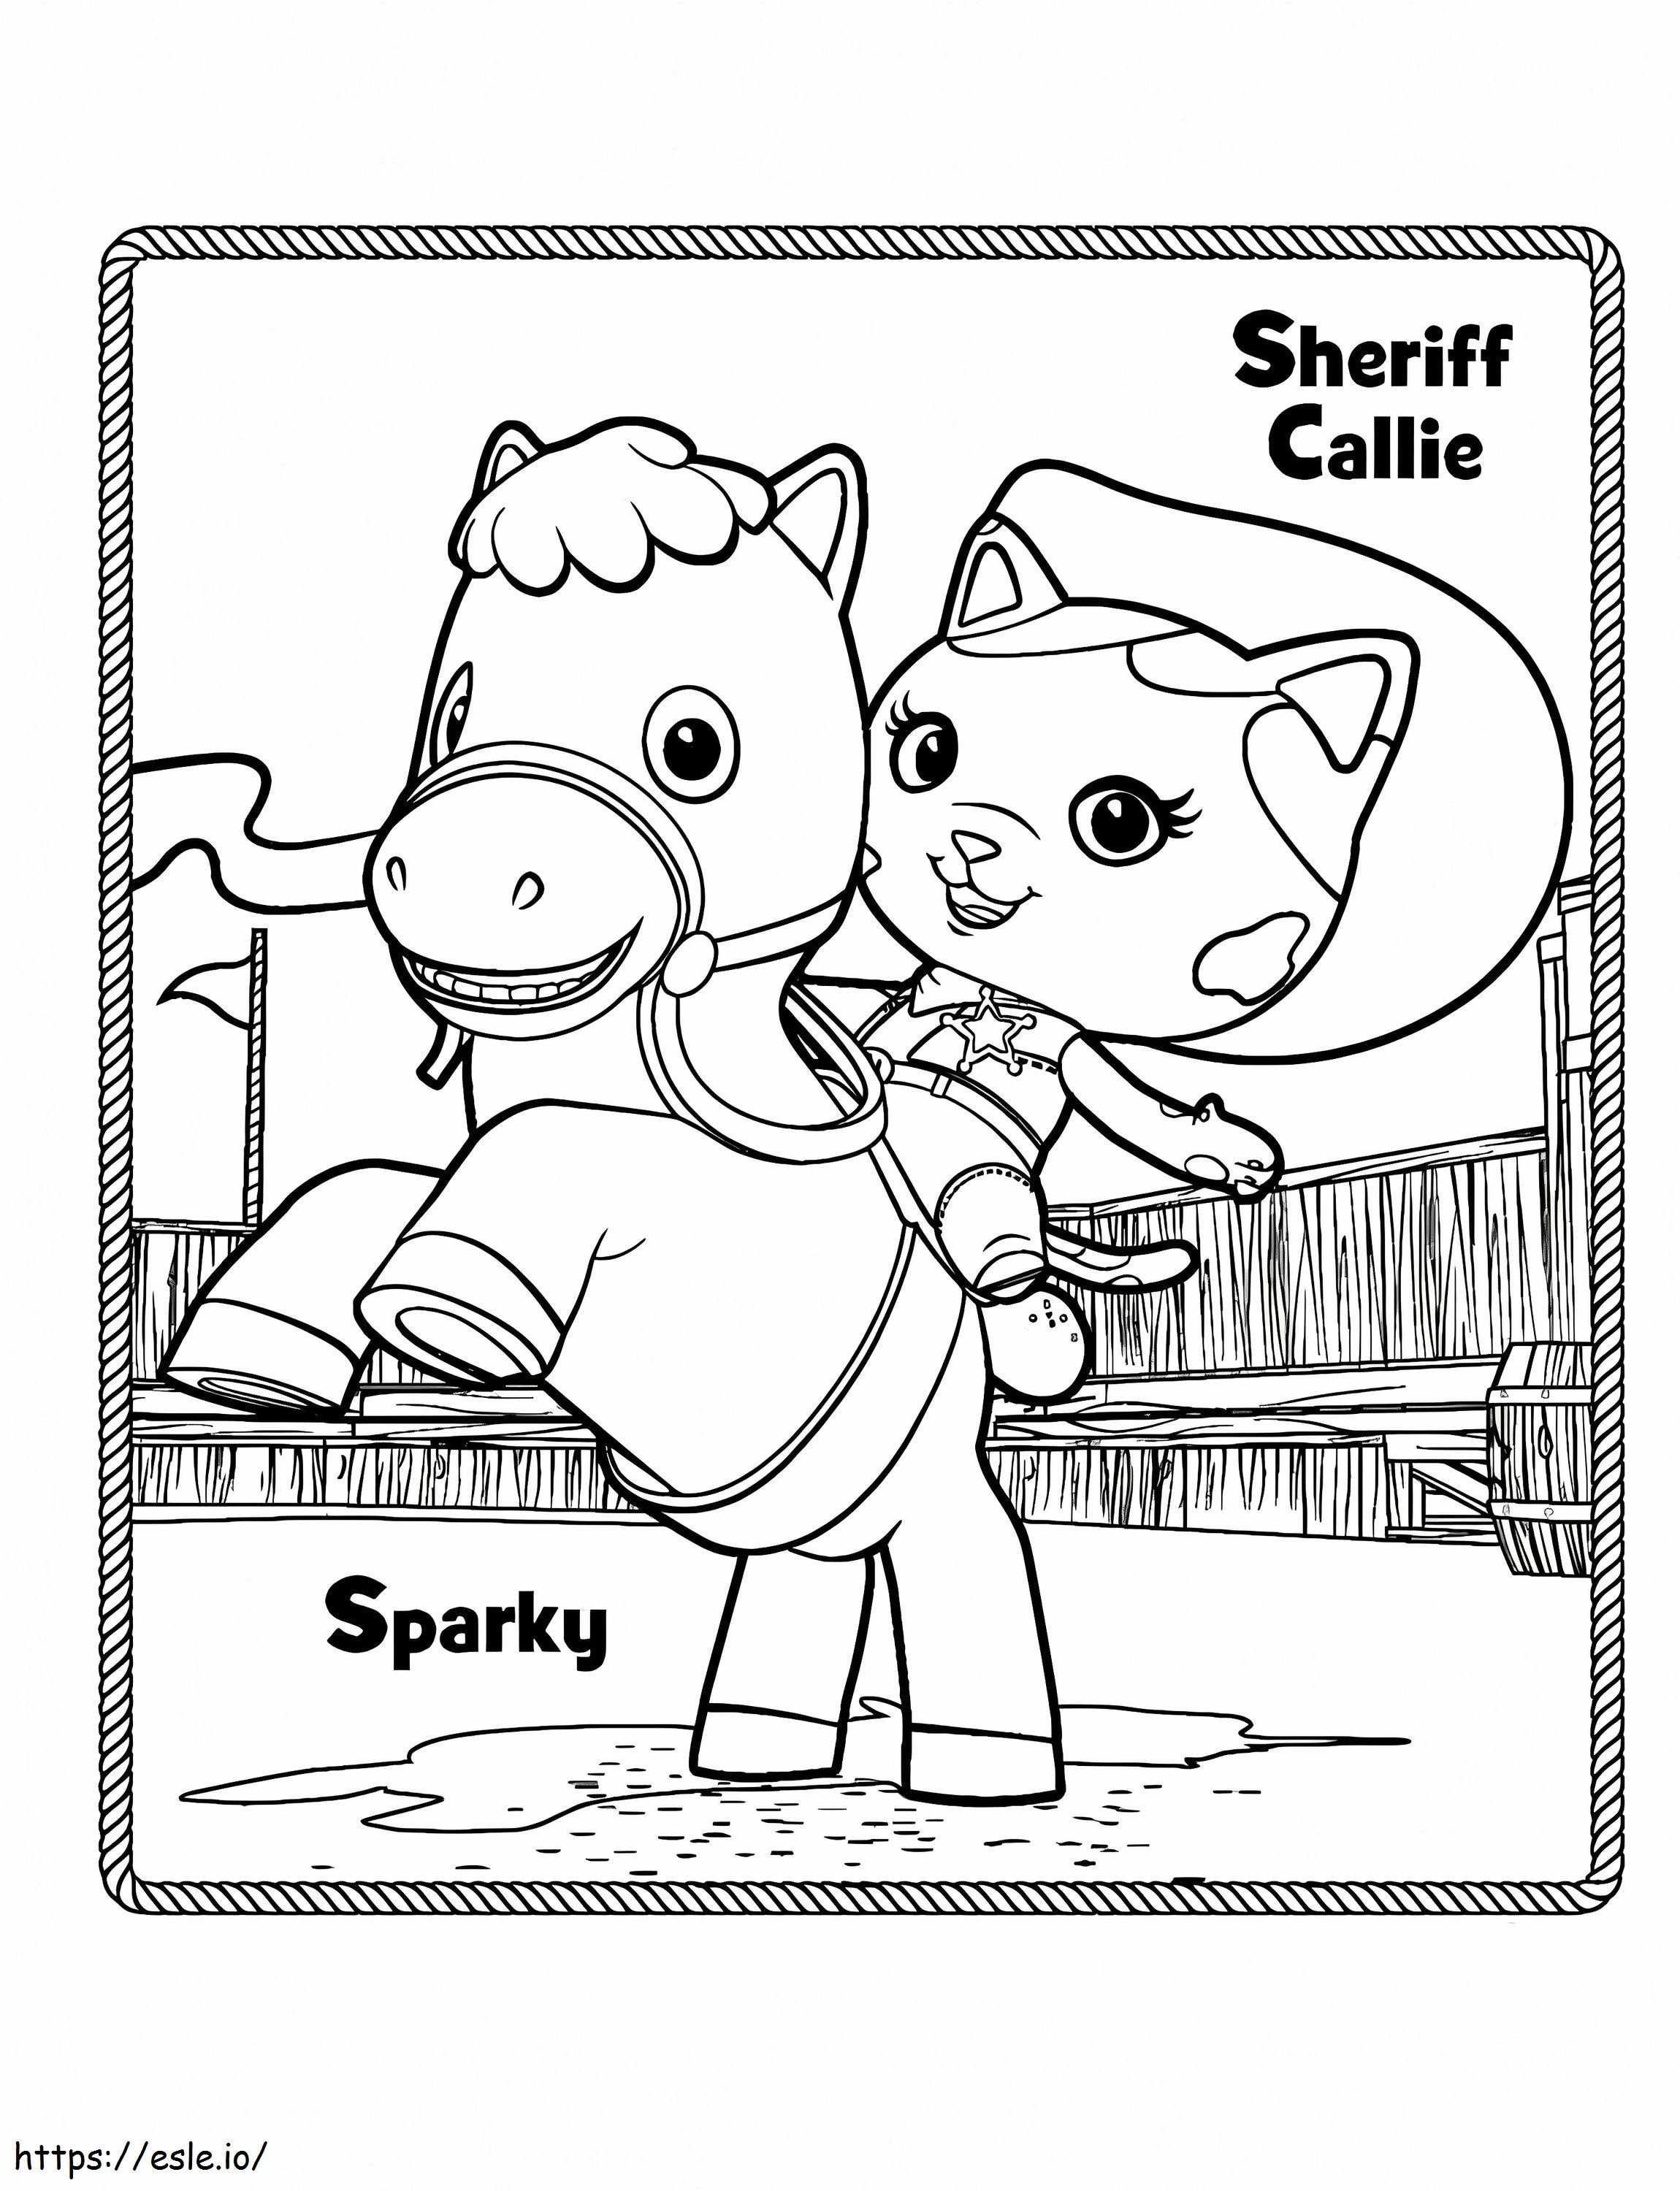 Coloriage Sparky et le shérif Callie à imprimer dessin